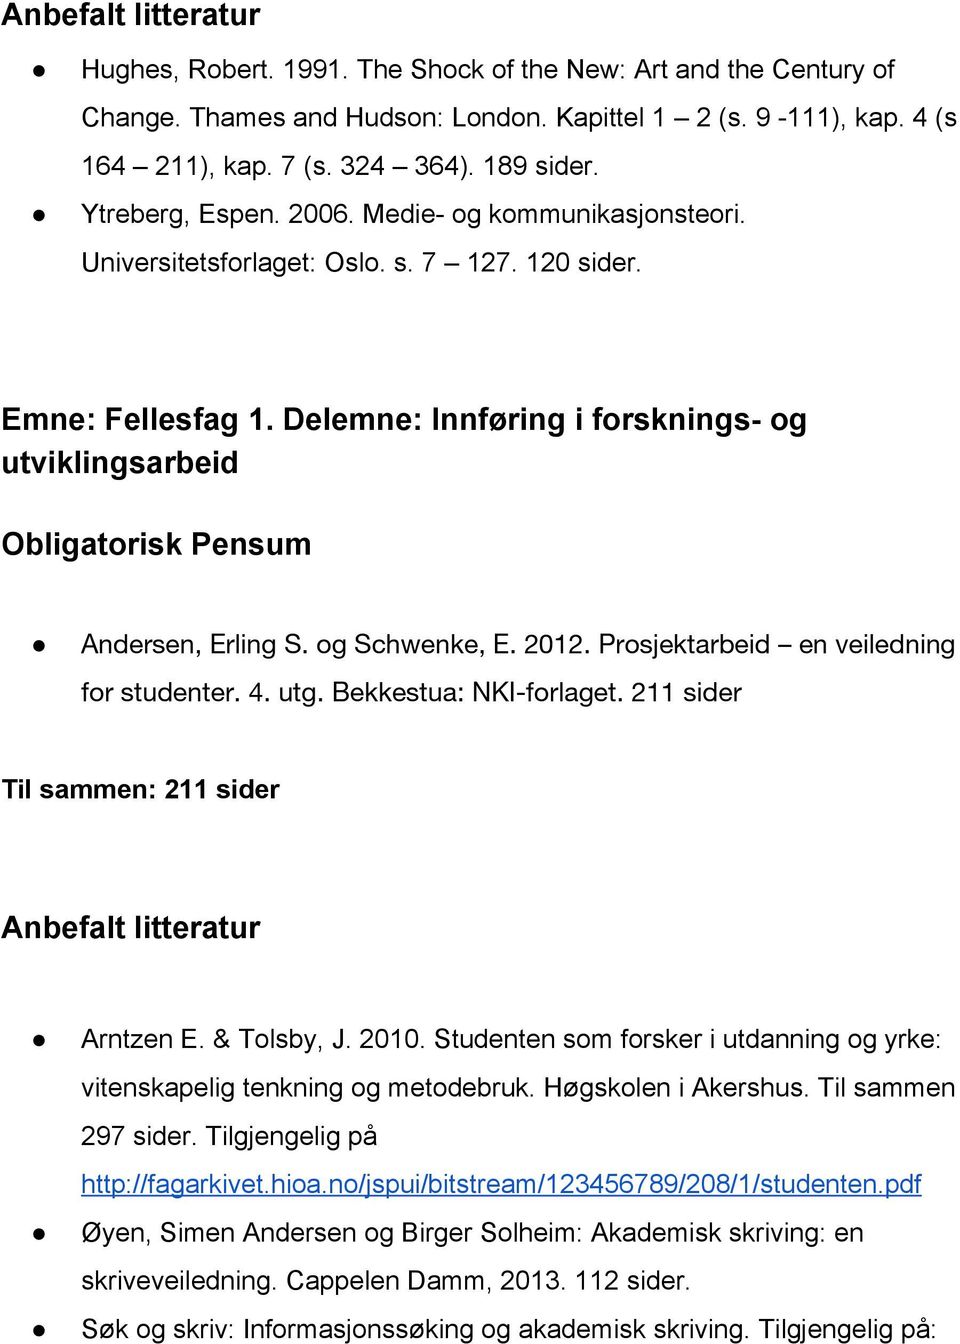 Delemne: Innføring i forsknings og utviklingsarbeid Obligatorisk Pensum Andersen, Erling S. og Schwenke, E. 2012. Prosjektarbeid en veiledning for studenter. 4. utg. Bekkestua: NKI-forlaget.